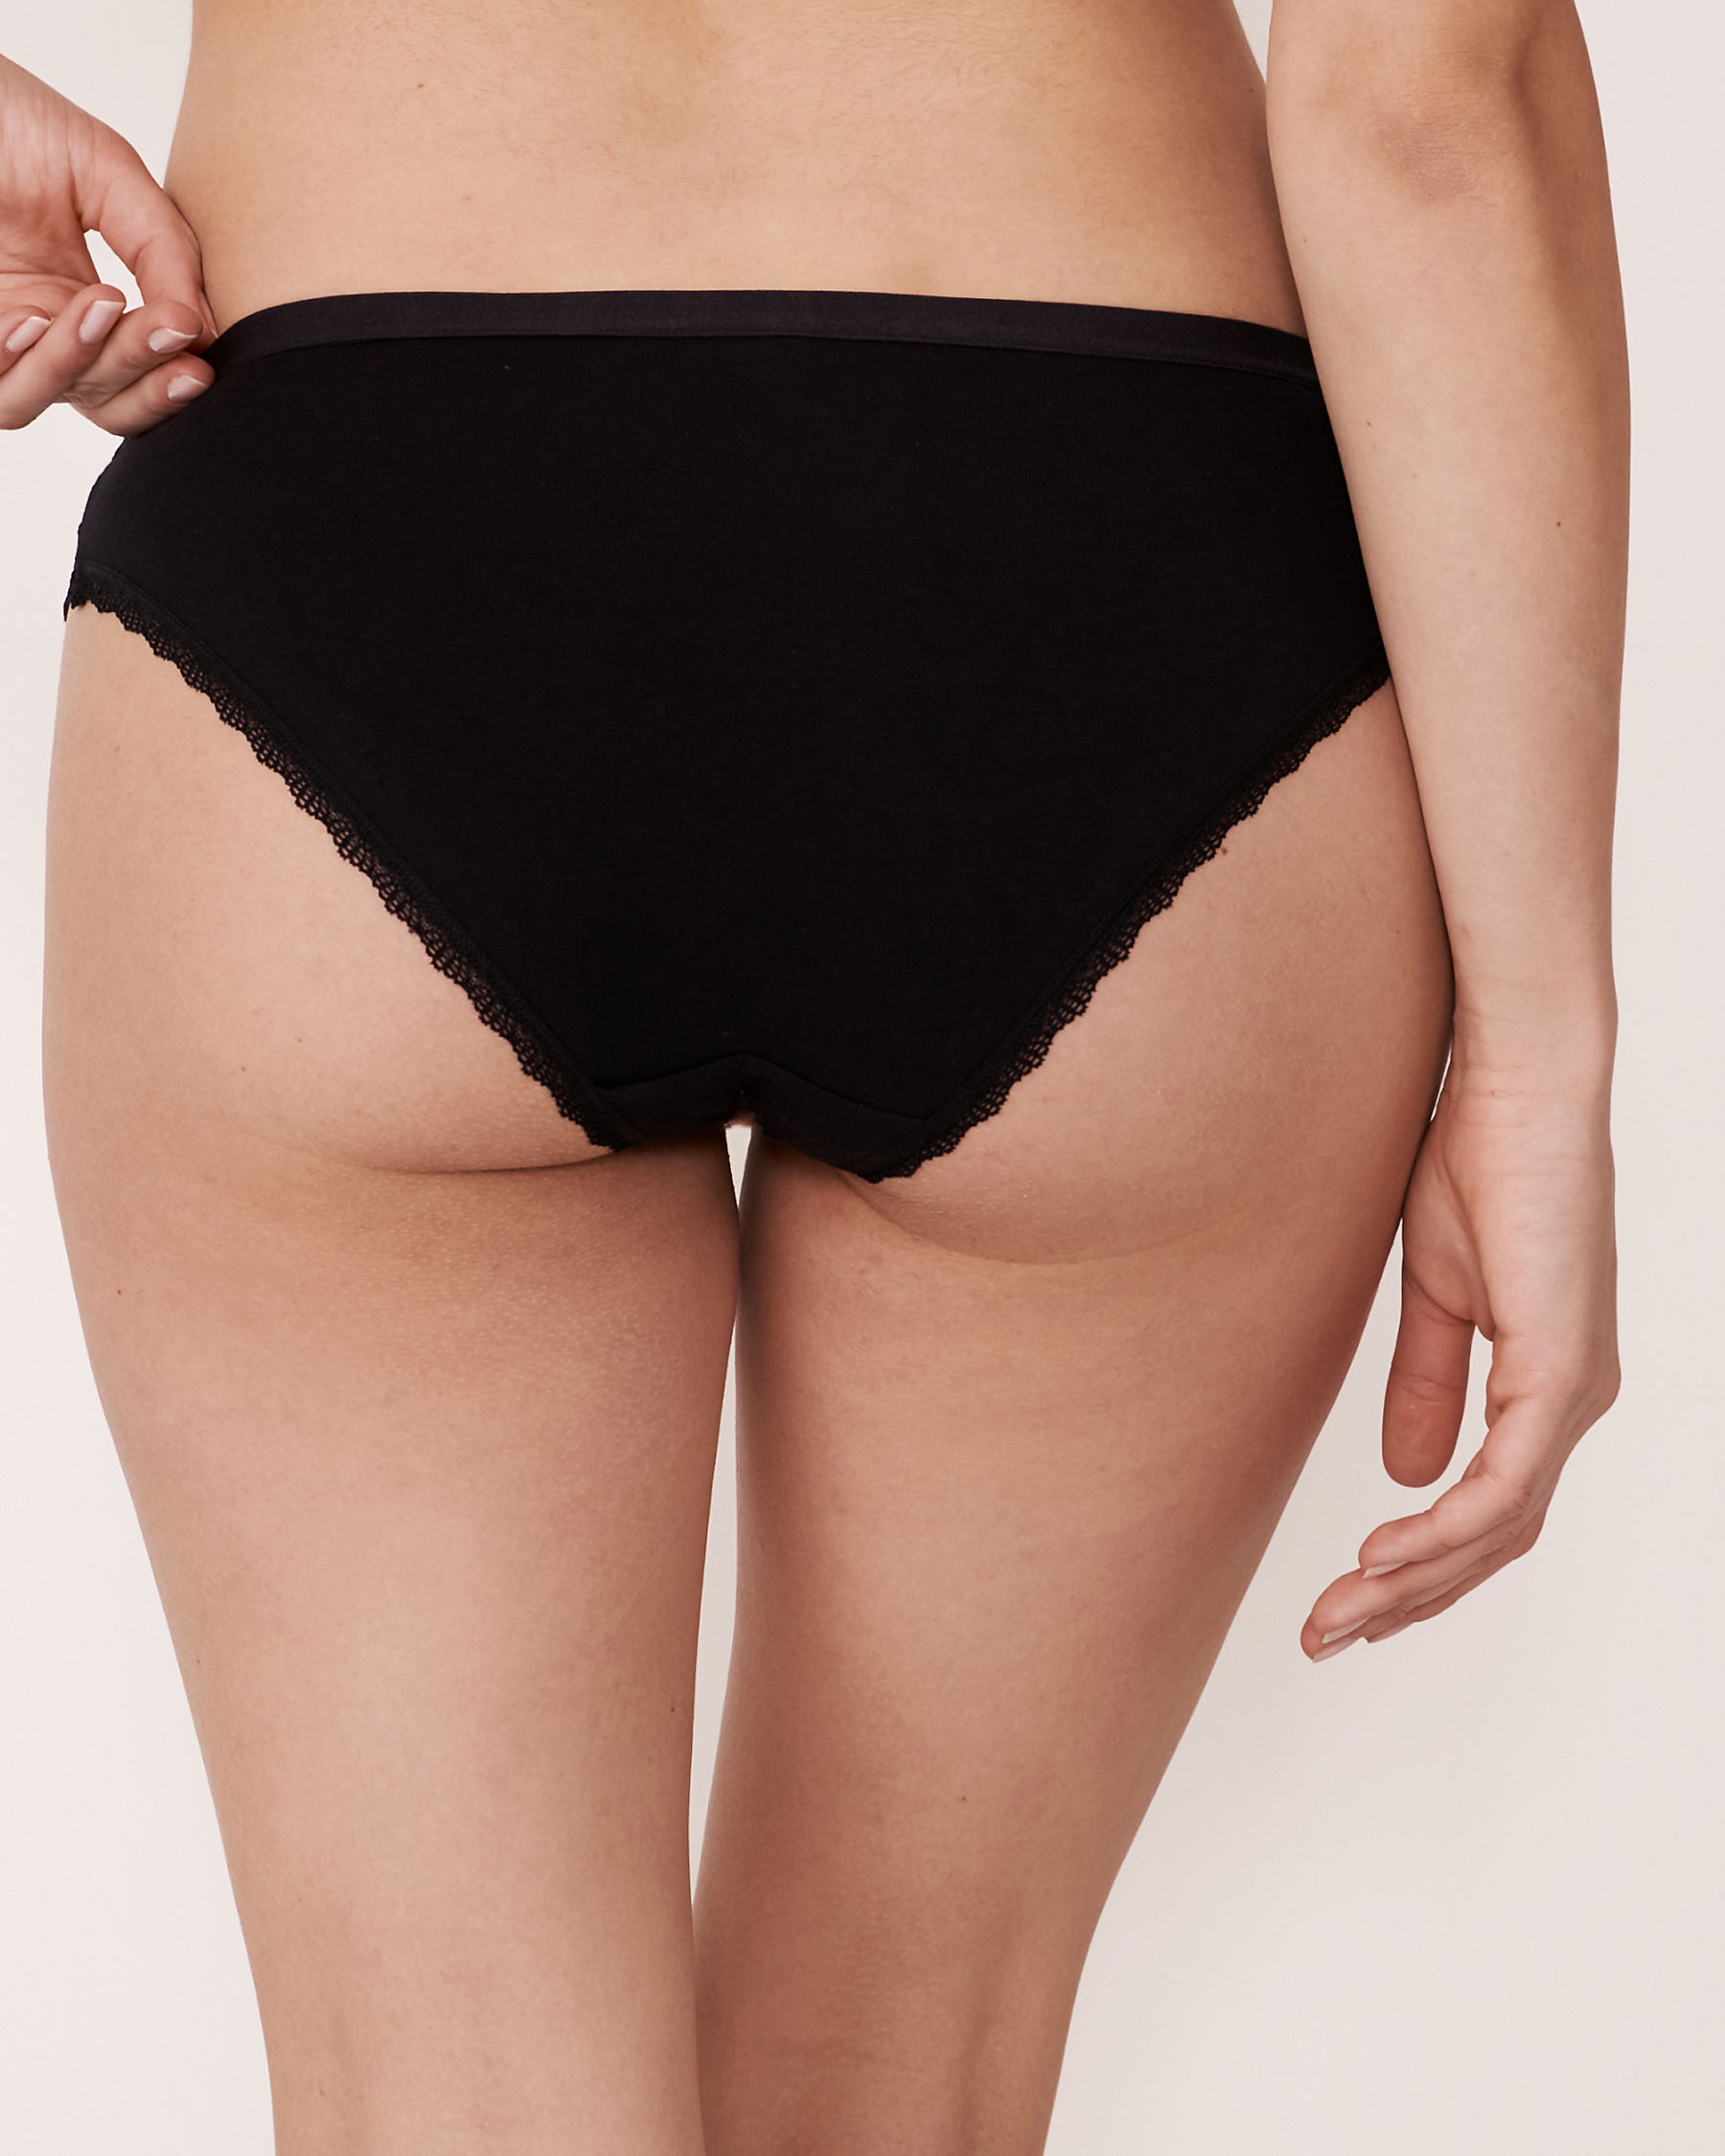 LA VIE EN ROSE Cotton and Scalloped Trim Bikini Panty Black 530-212-0-00 - View2